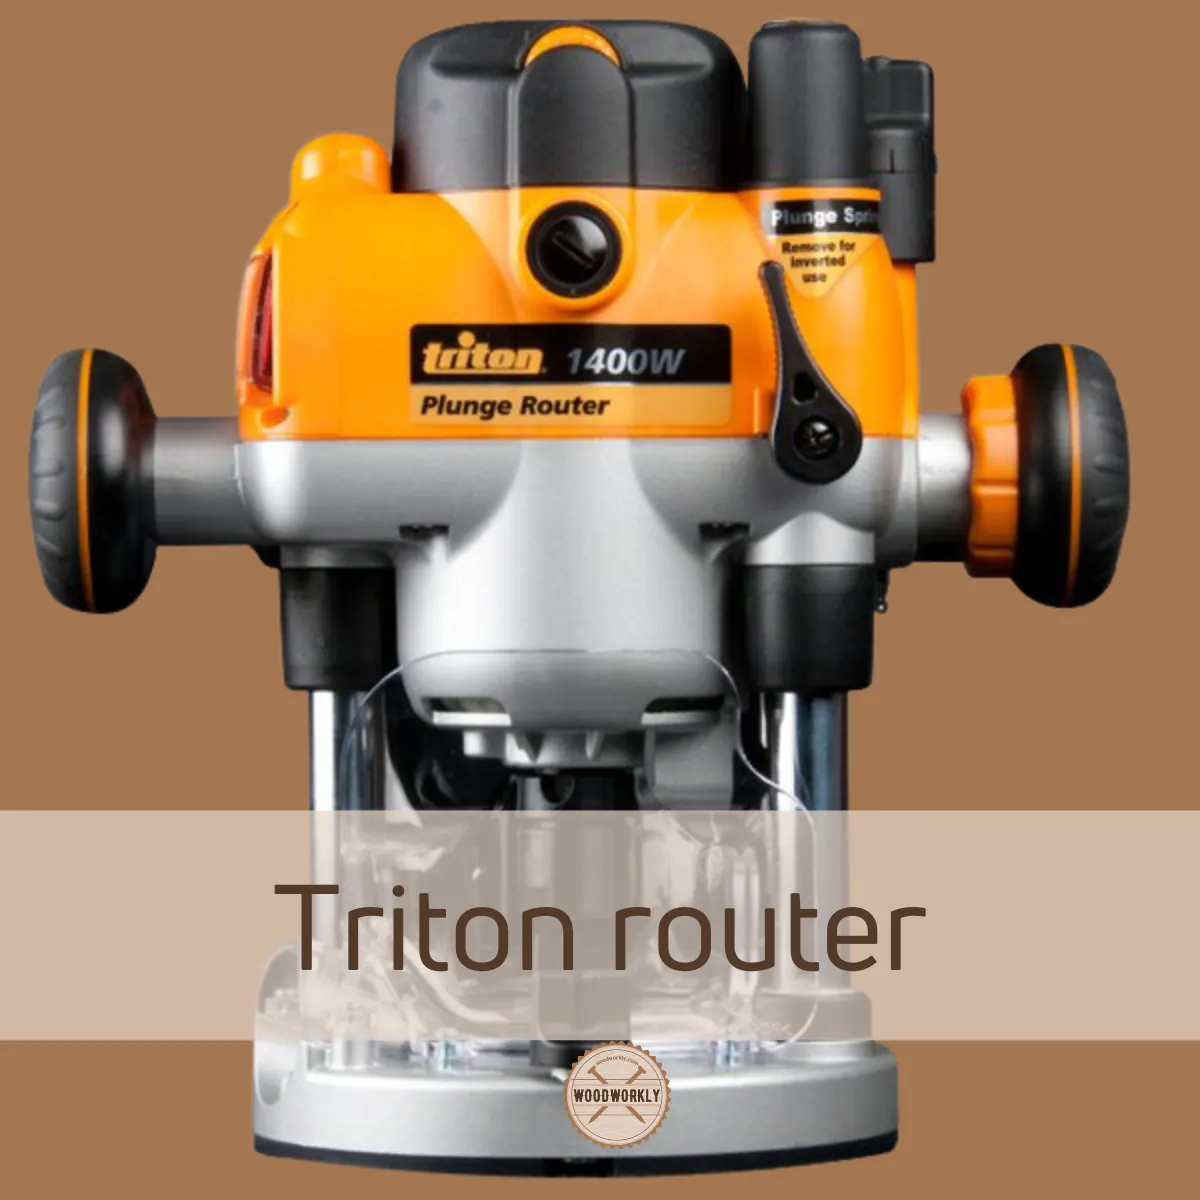 Triton router